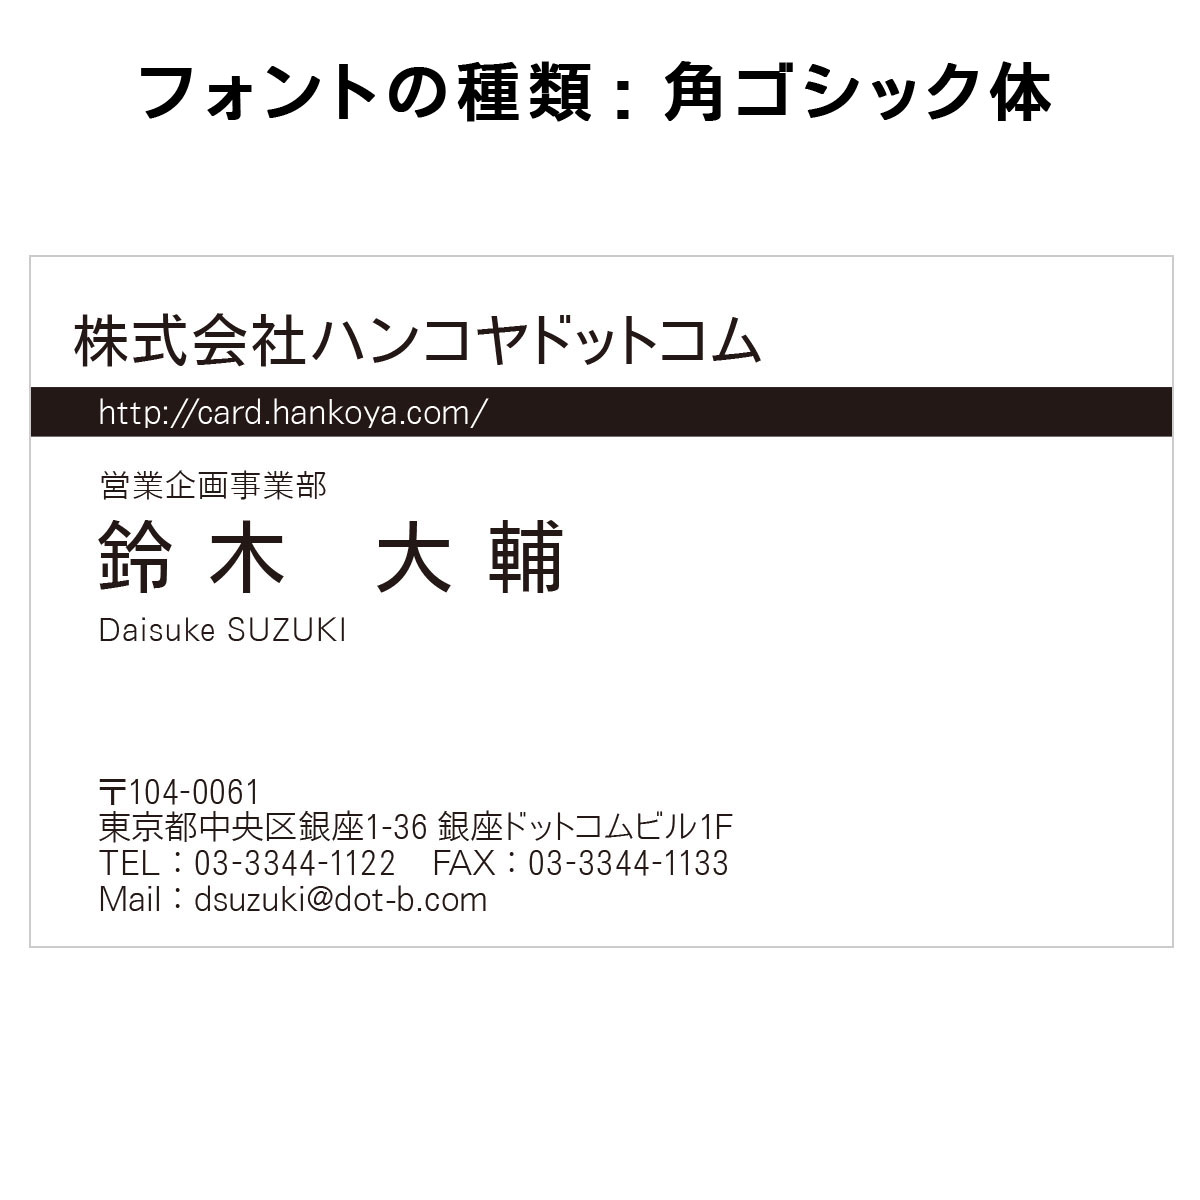 テキスト入稿名刺 ヨコ向き 両面モノクロ印刷 AE-01 英語表記